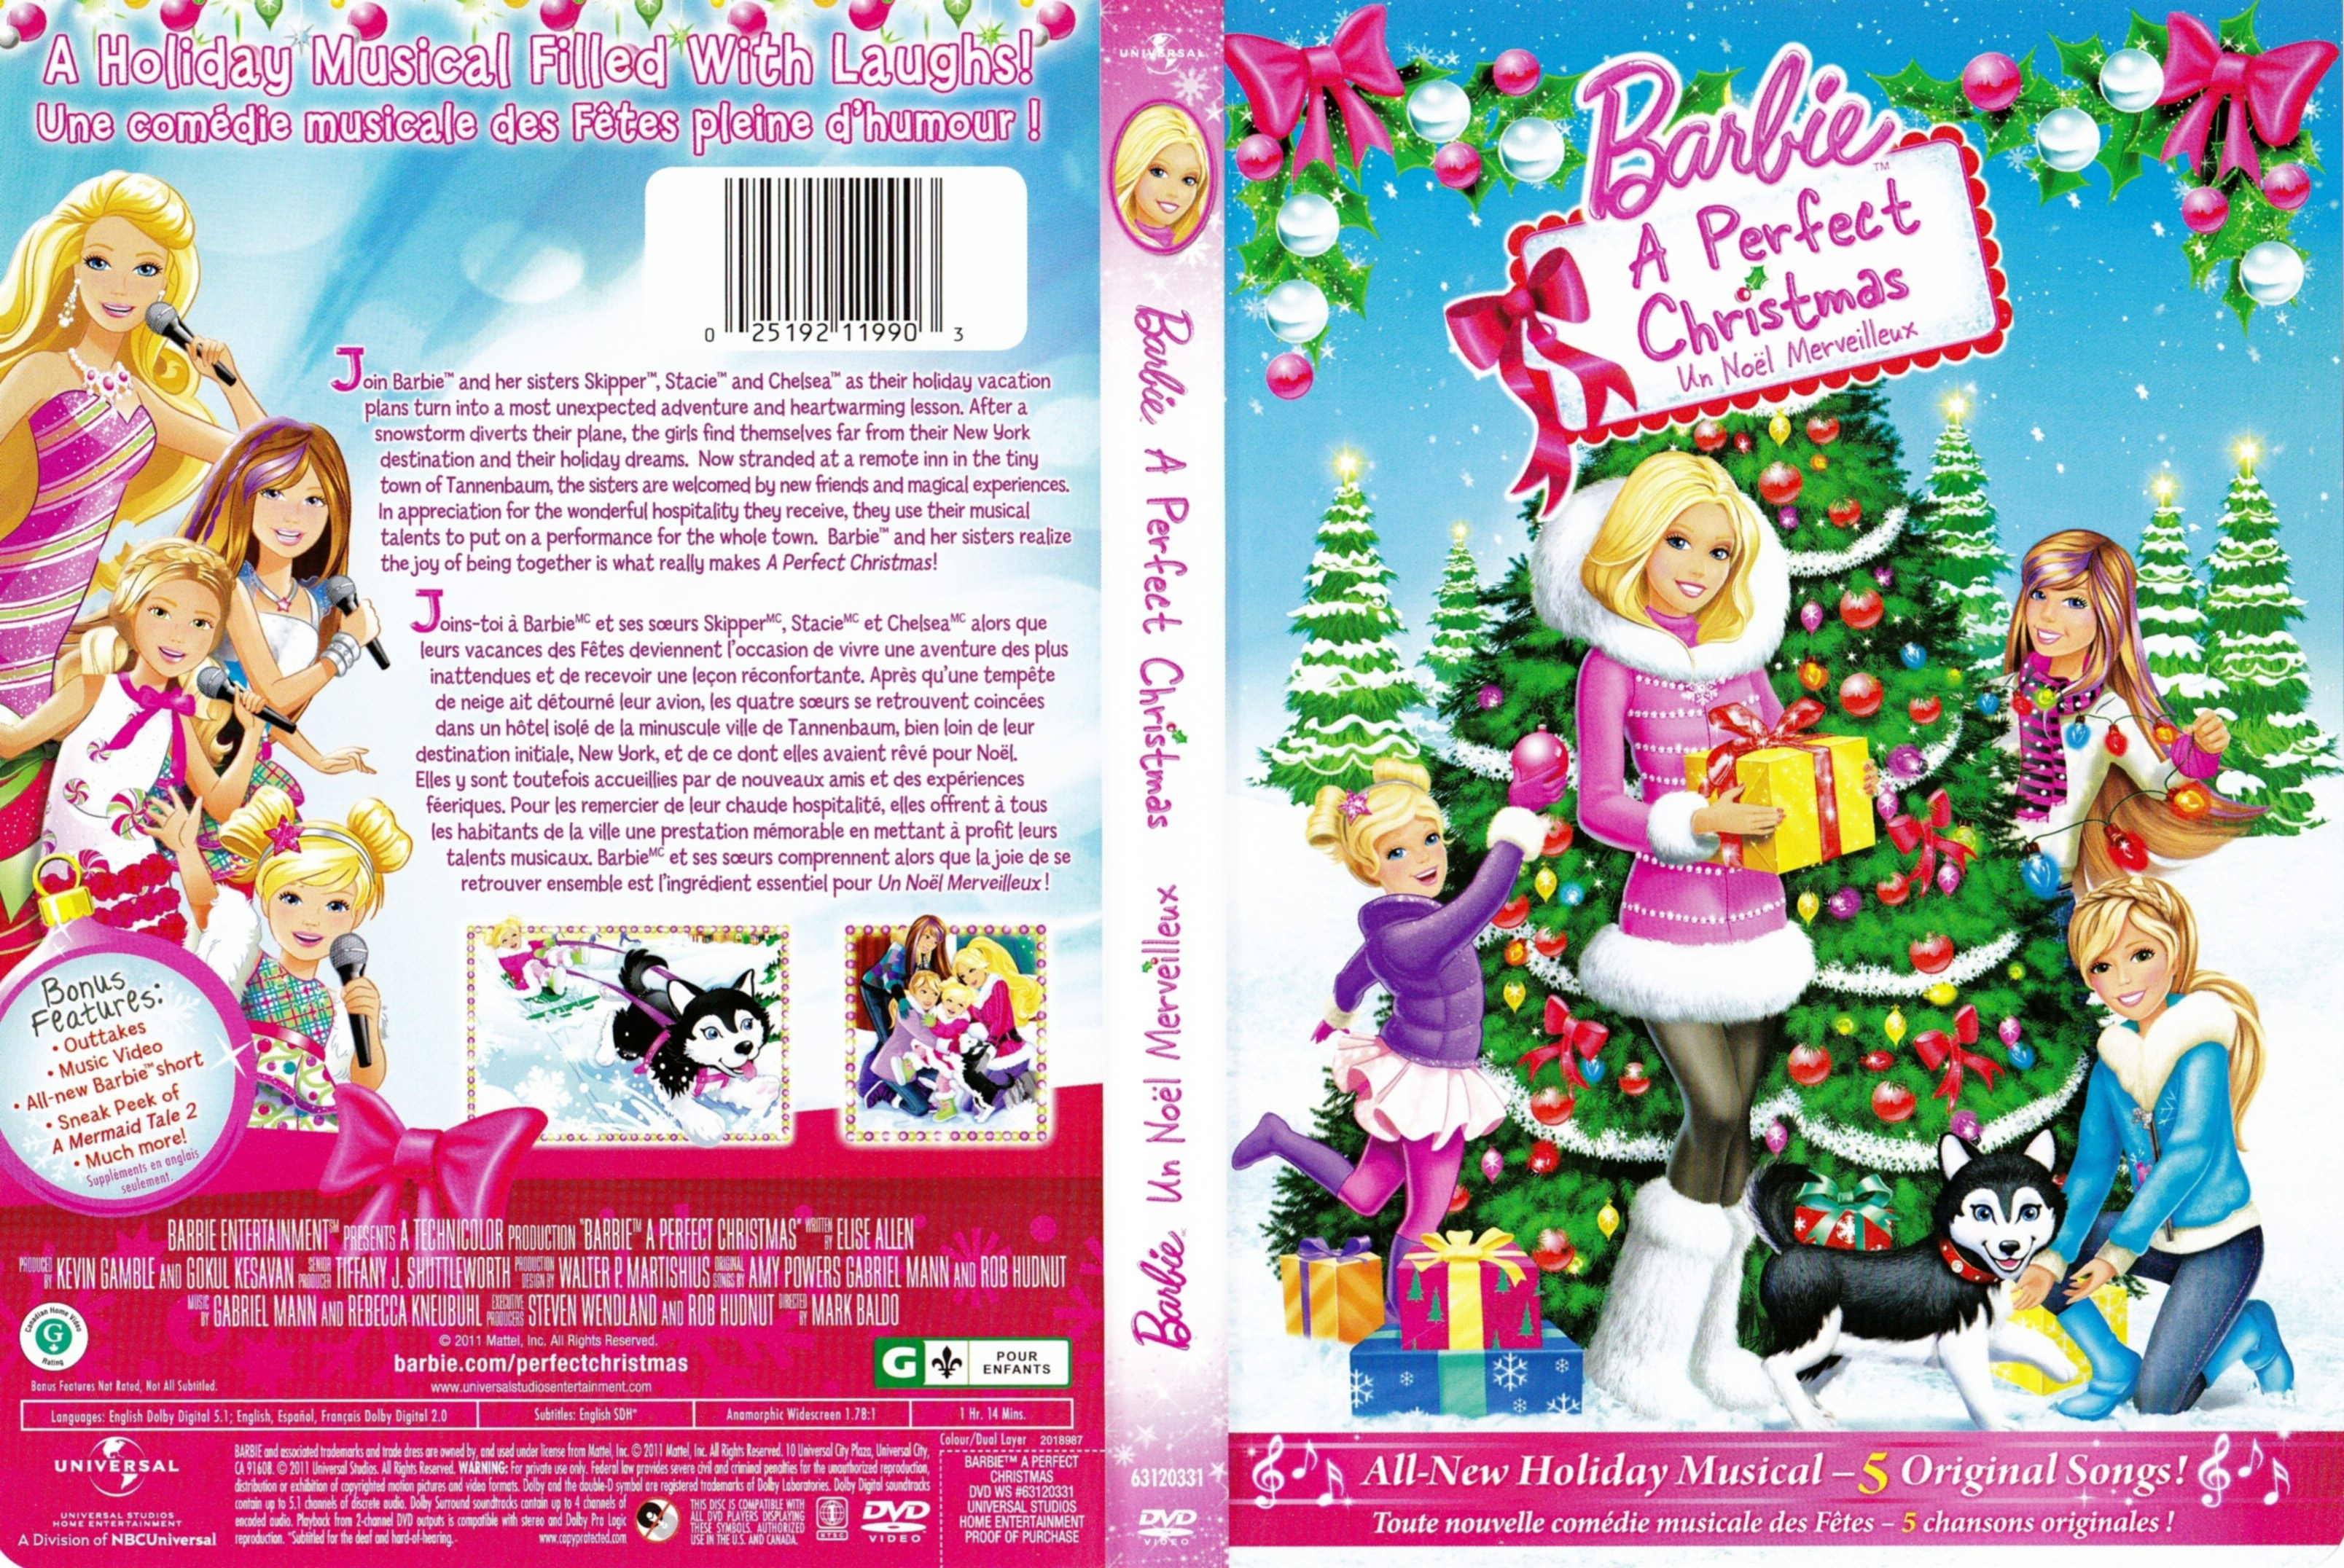 Jaquette DVD de Barbie et un Noel Merveilleux - Barbie a perfect